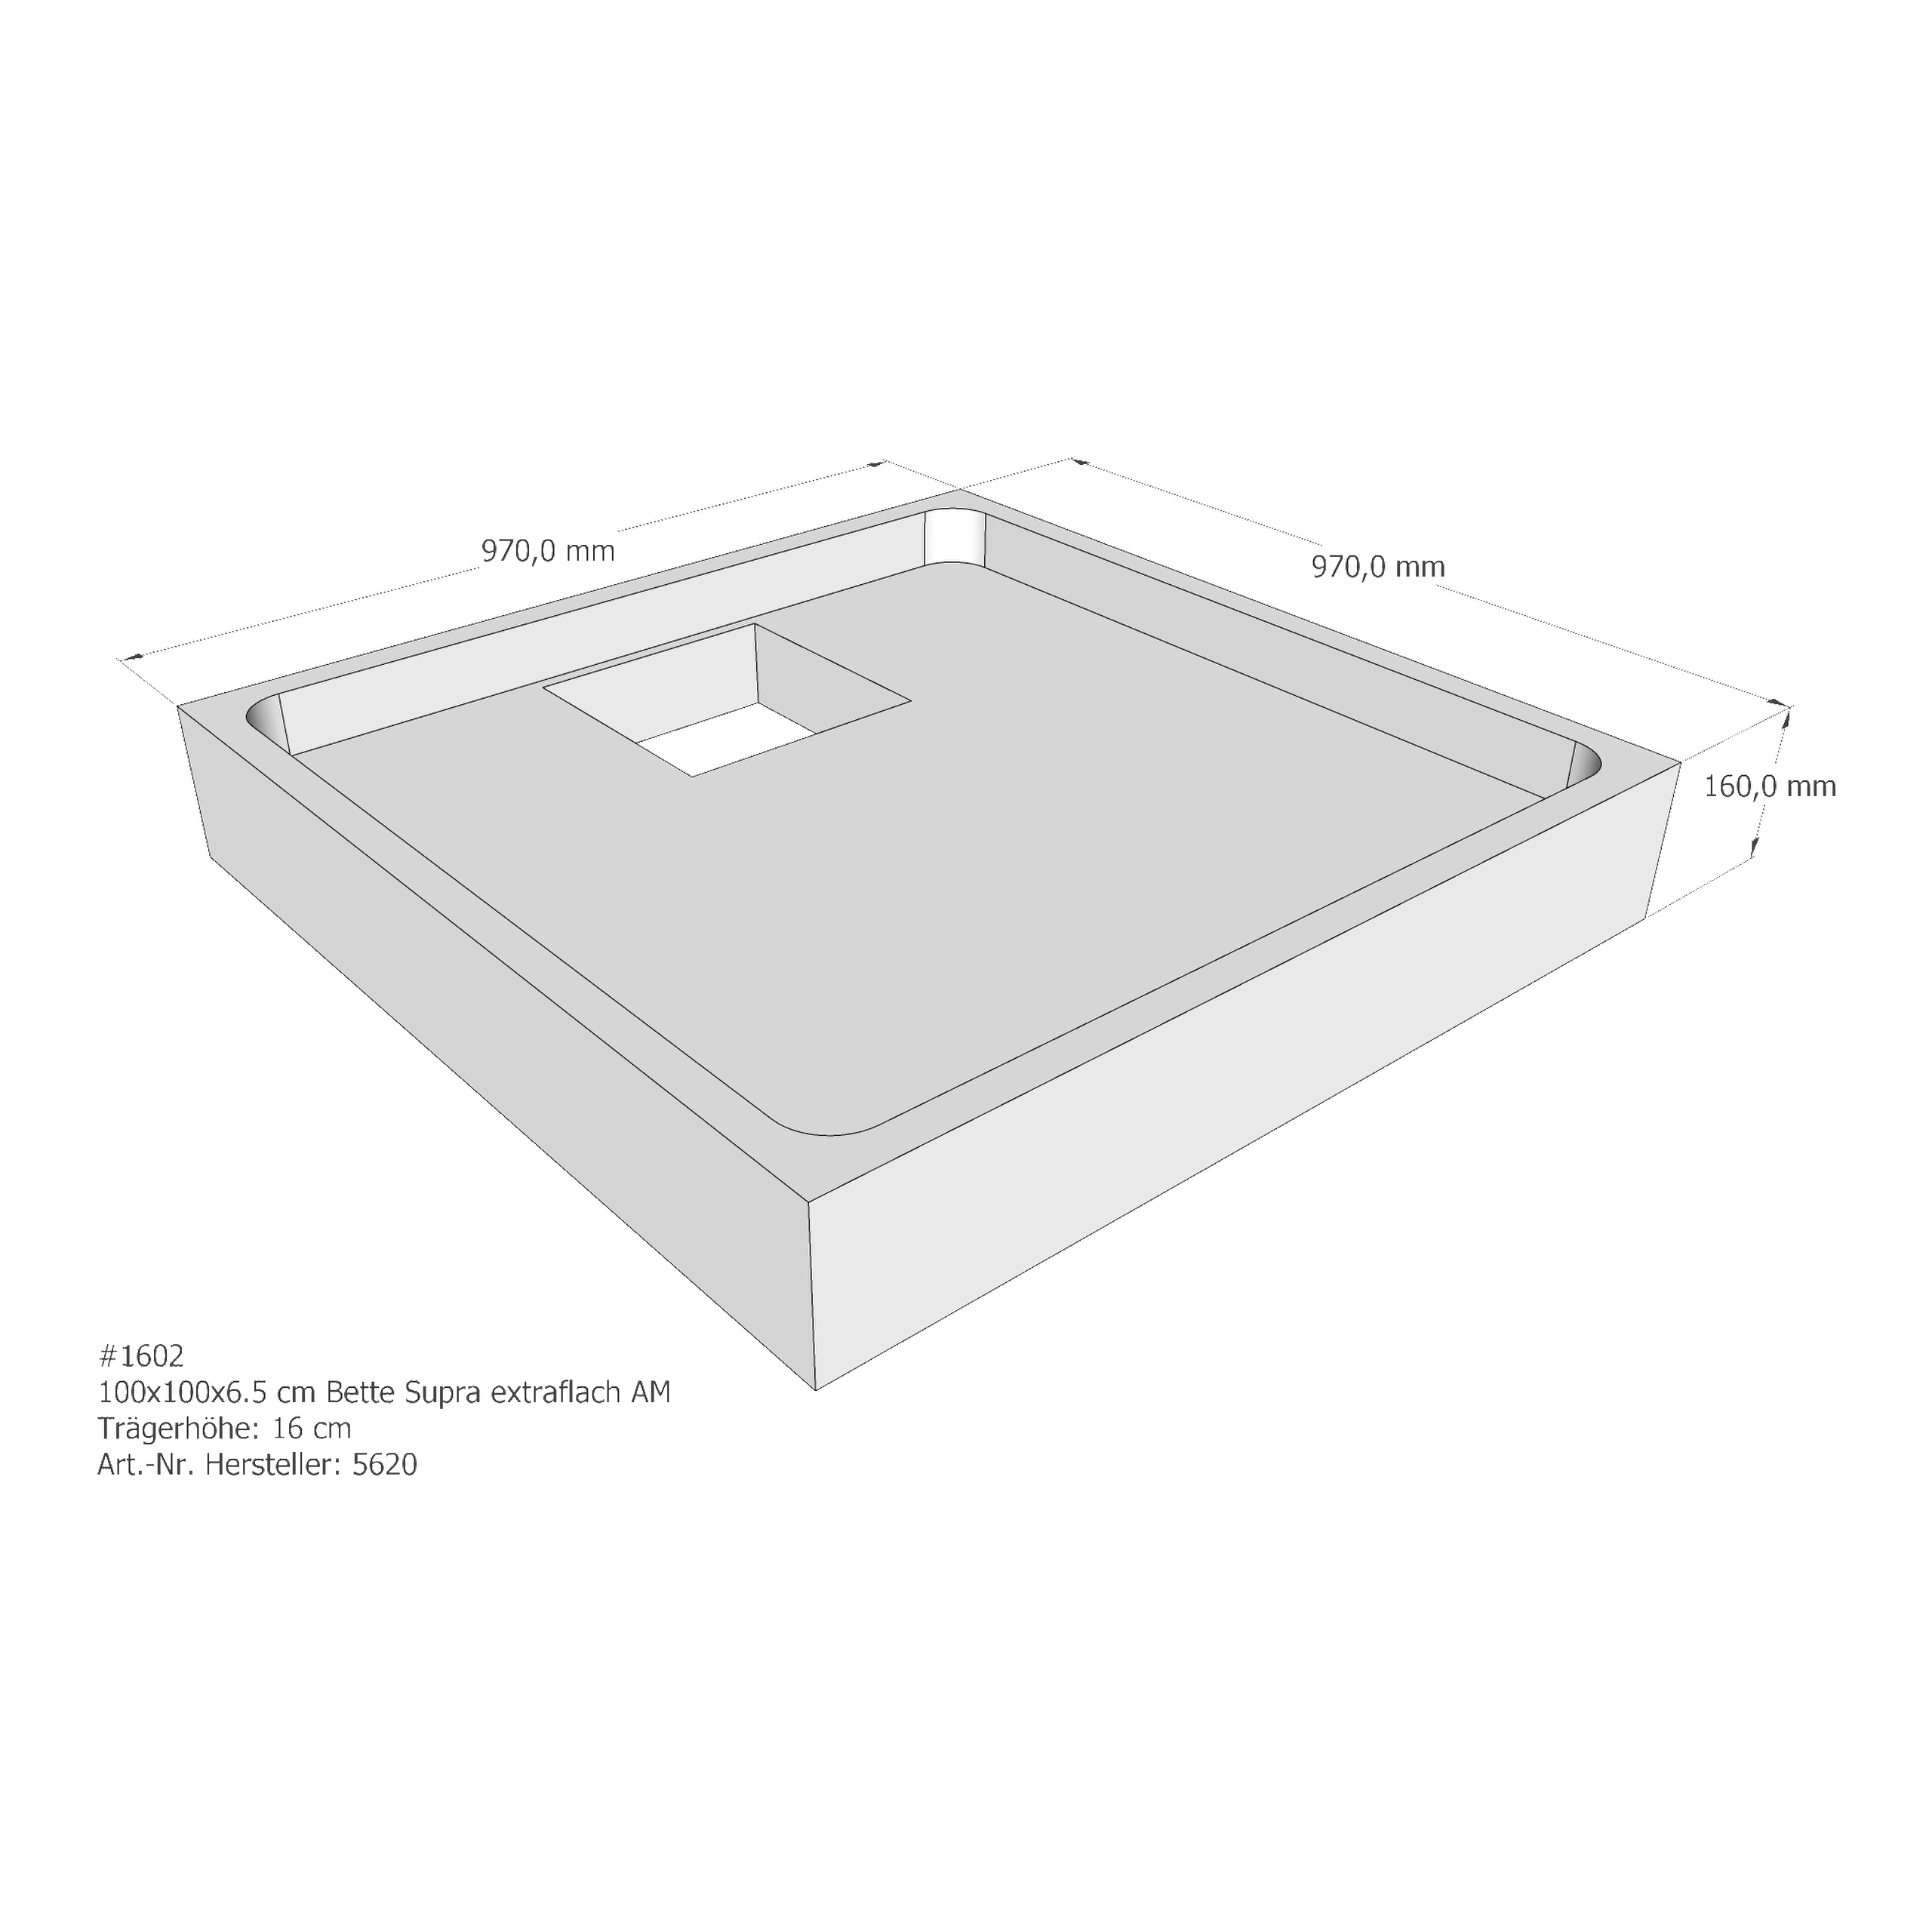 Duschwannenträger für Bette BetteSupra (extraflach) 100 × 100 × 6,5 cm